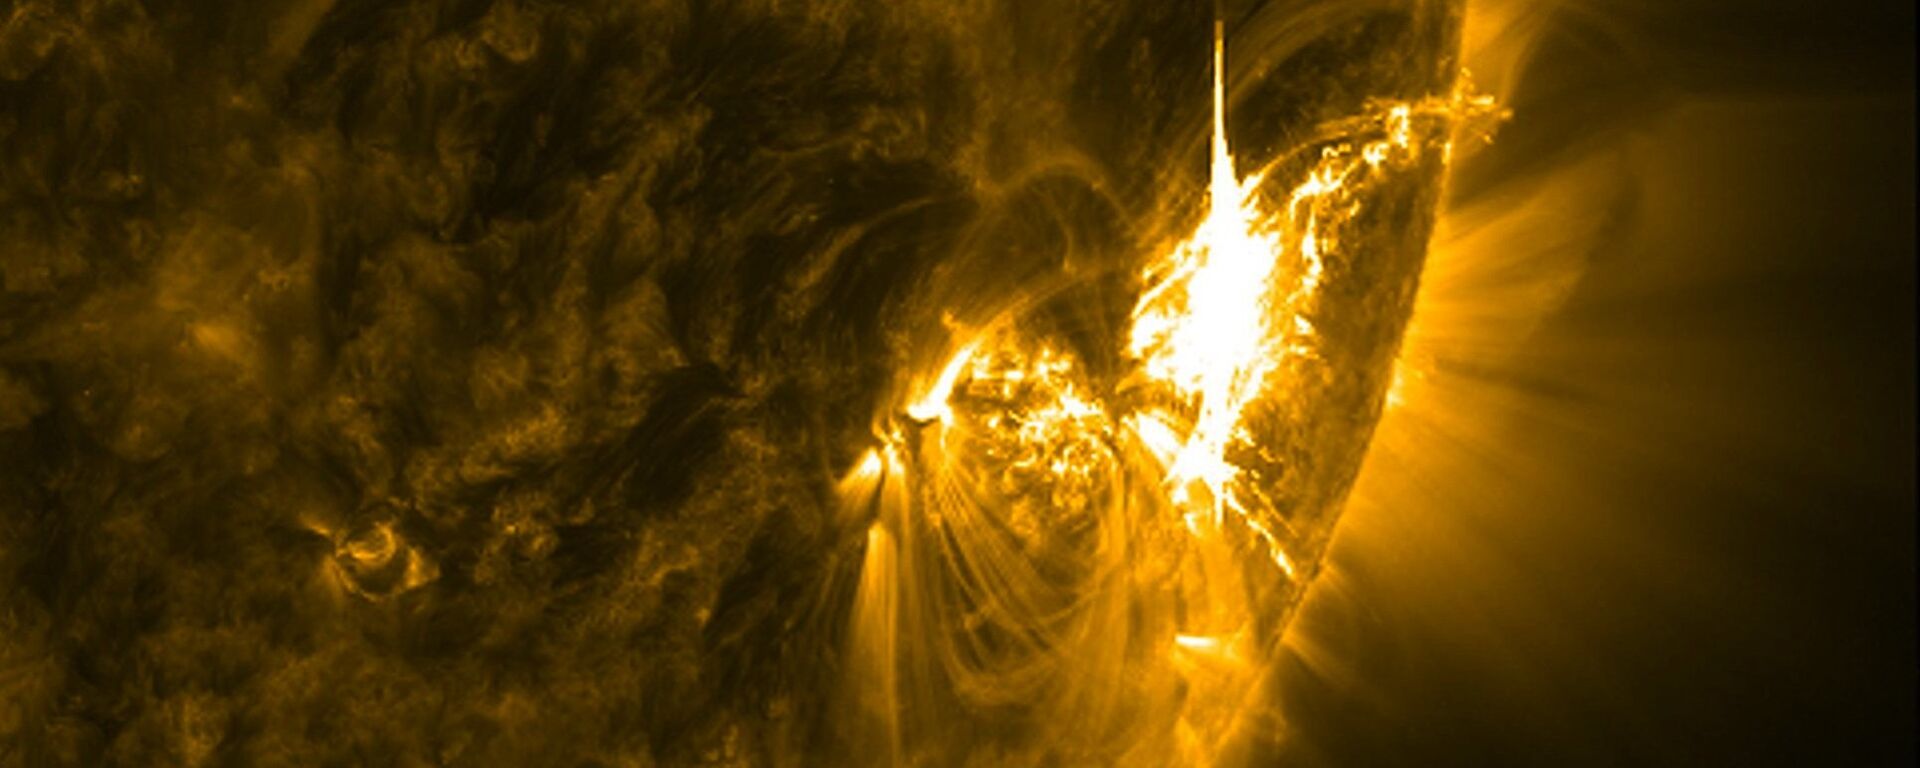 გეომაგნიტური ქარიშხალი მზეზე - Sputnik საქართველო, 1920, 18.05.2018